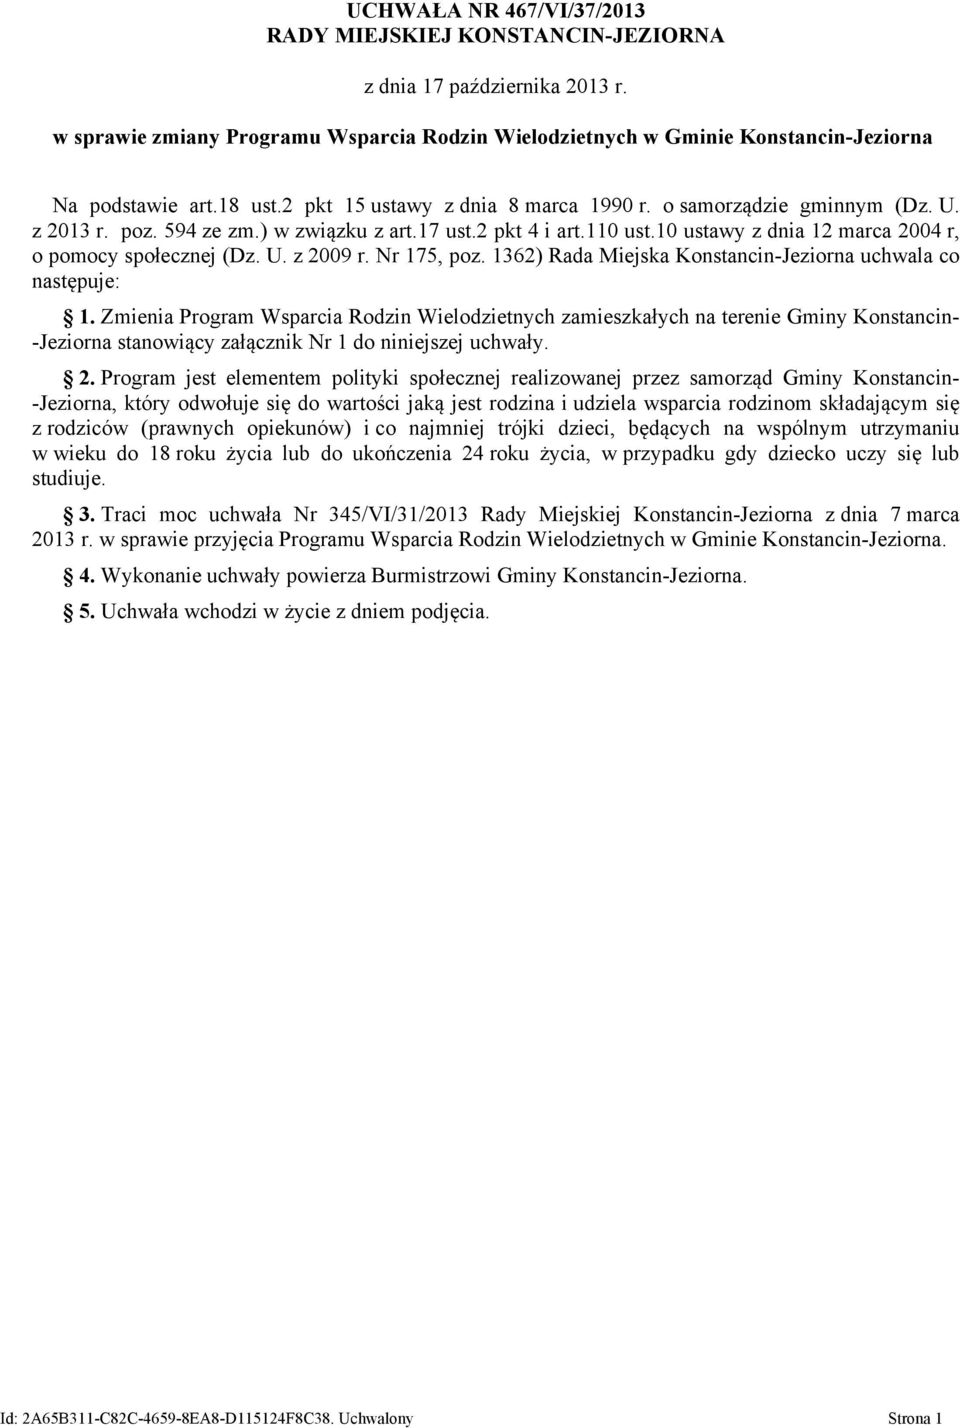 10 ustawy z dnia 12 marca 2004 r, o pomocy społecznej (Dz. U. z 2009 r. Nr 175, poz. 1362) Rada Miejska Konstancin-Jeziorna uchwala co następuje: 1.